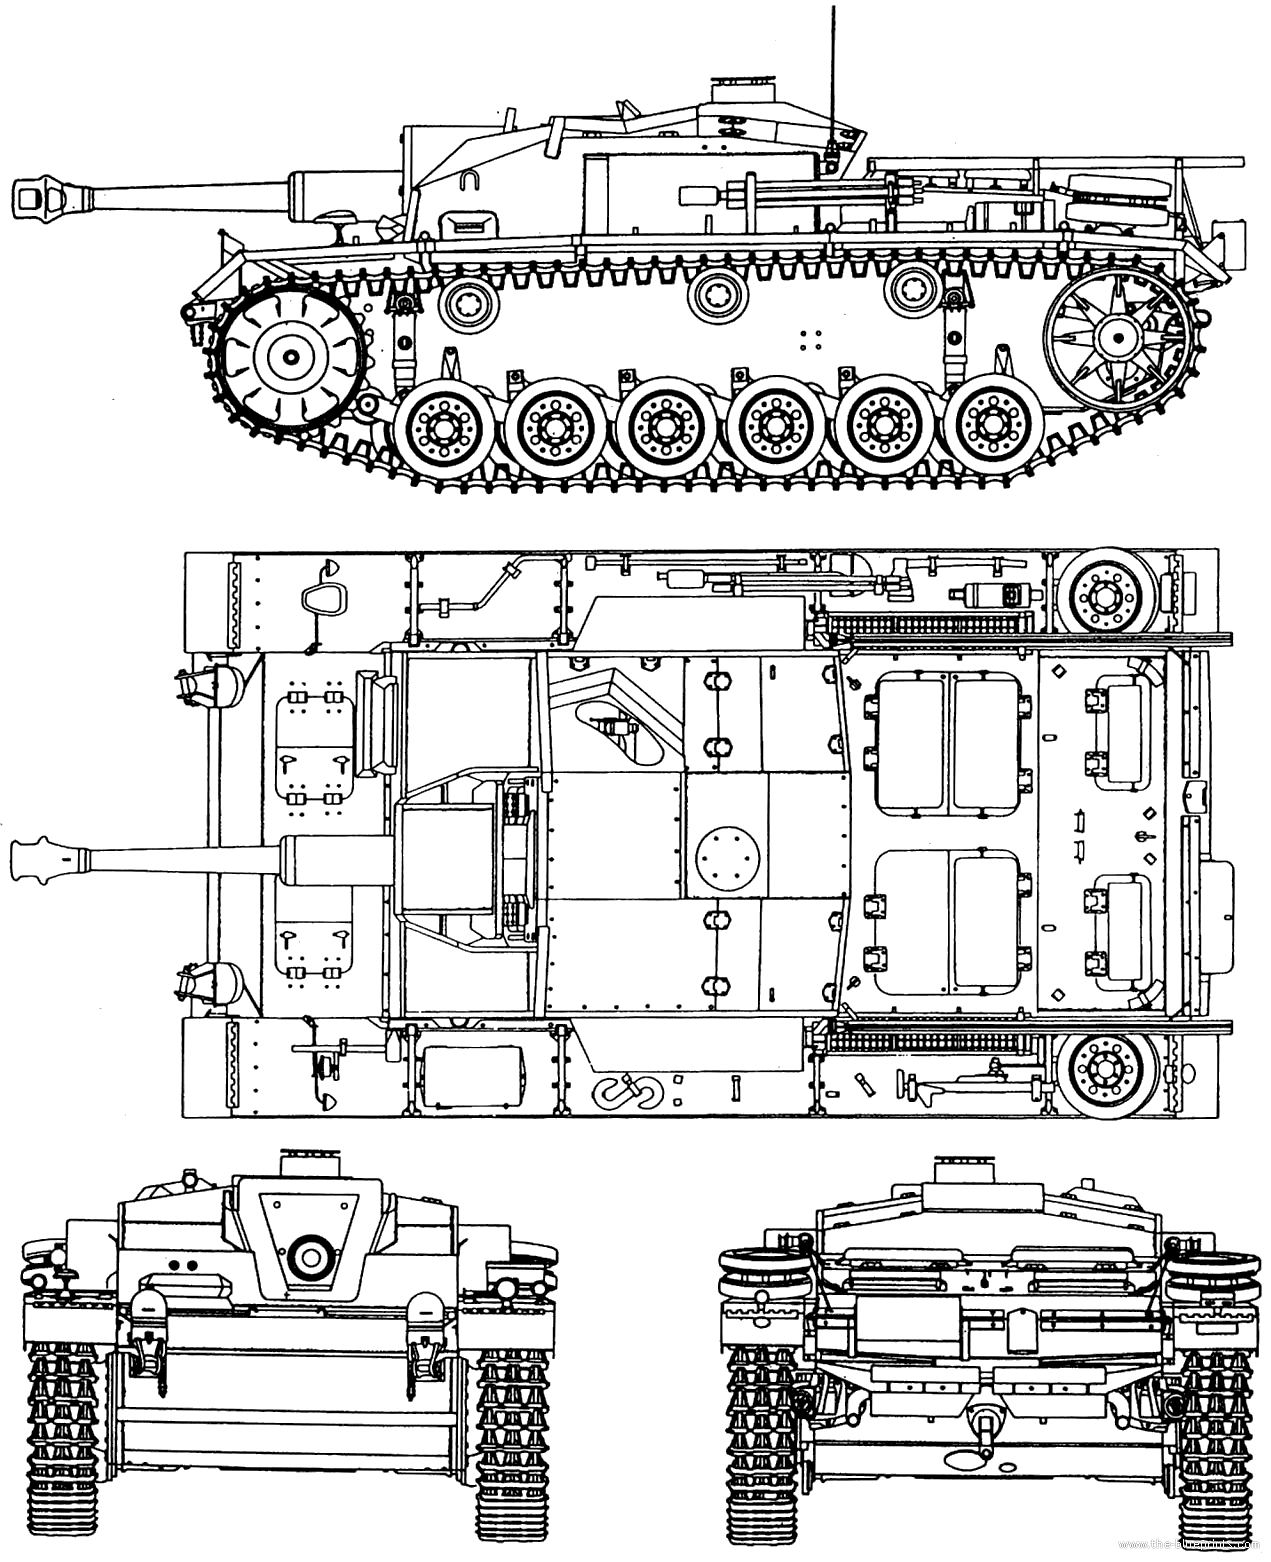 StuG III Ausf.F bluepri
nt